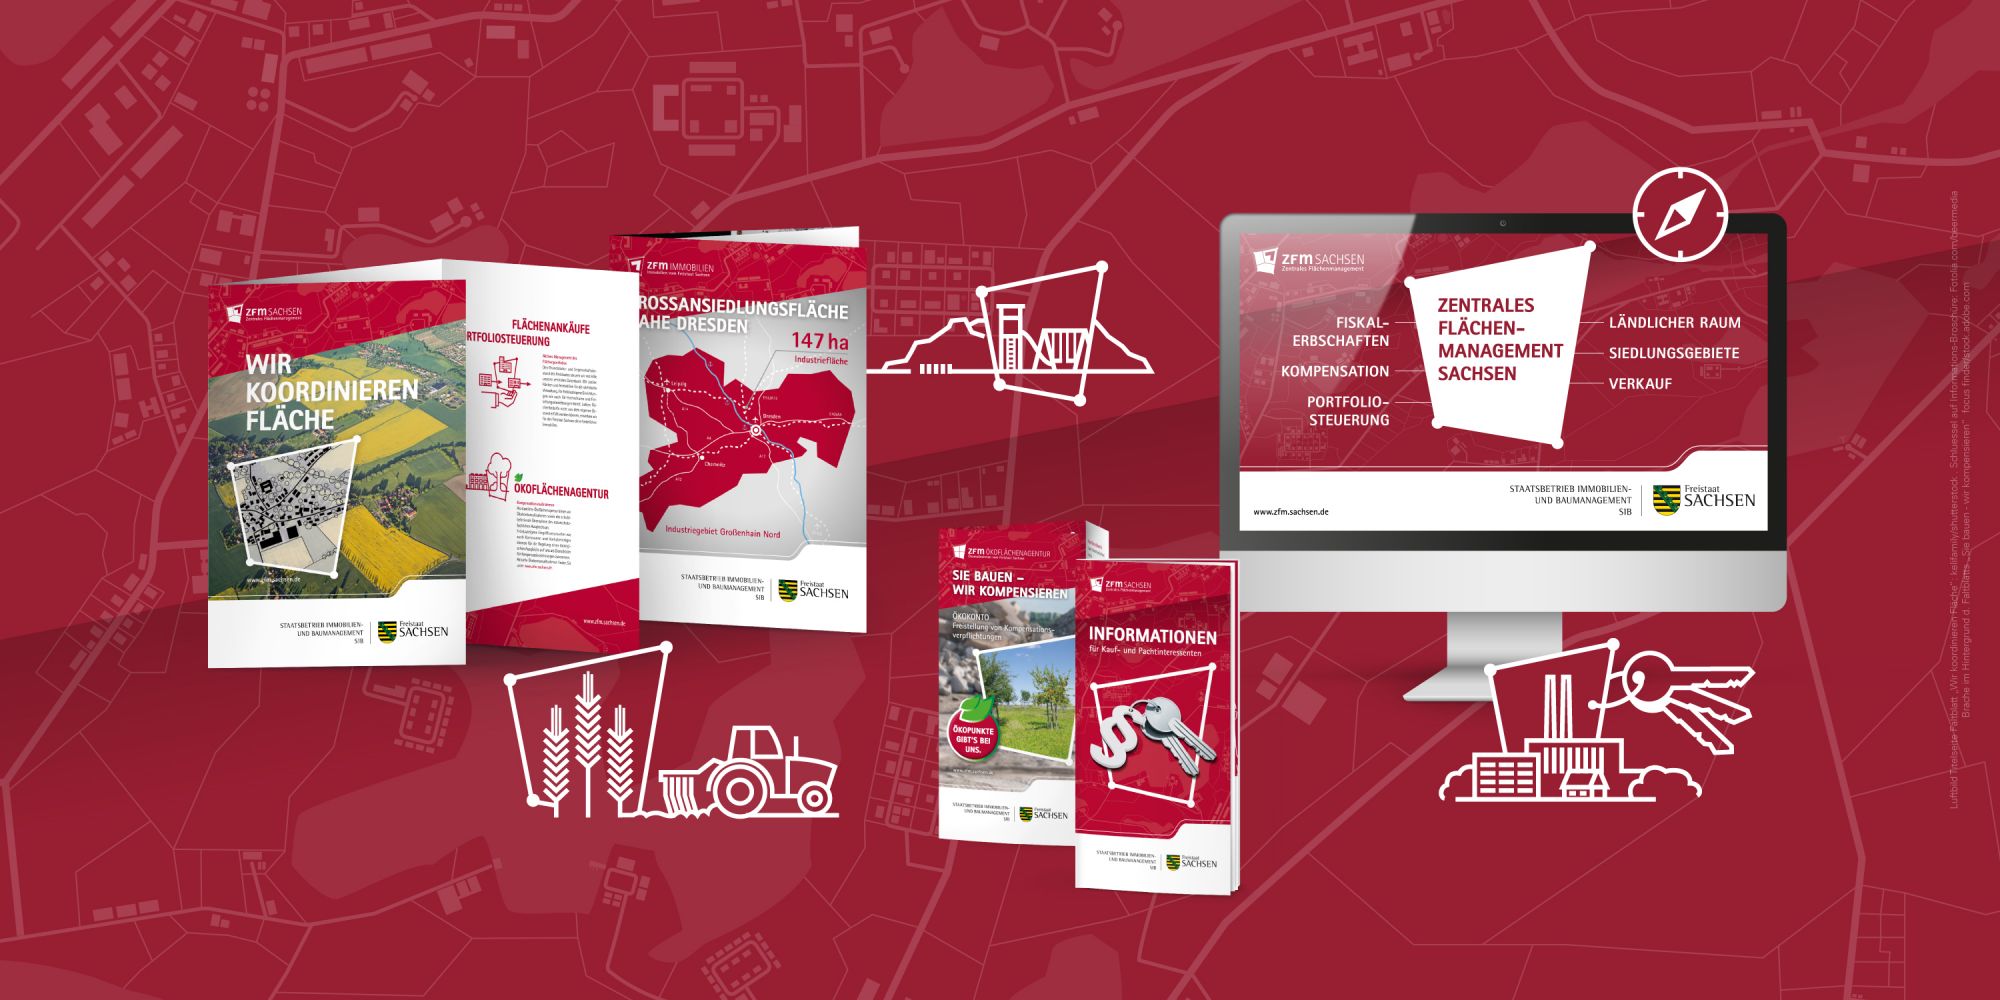 Anwendungsbeispiele des neuen, flexiblen Corporate Design des ZFM Sachsen (Broschüre, Flyer und Webdesign)